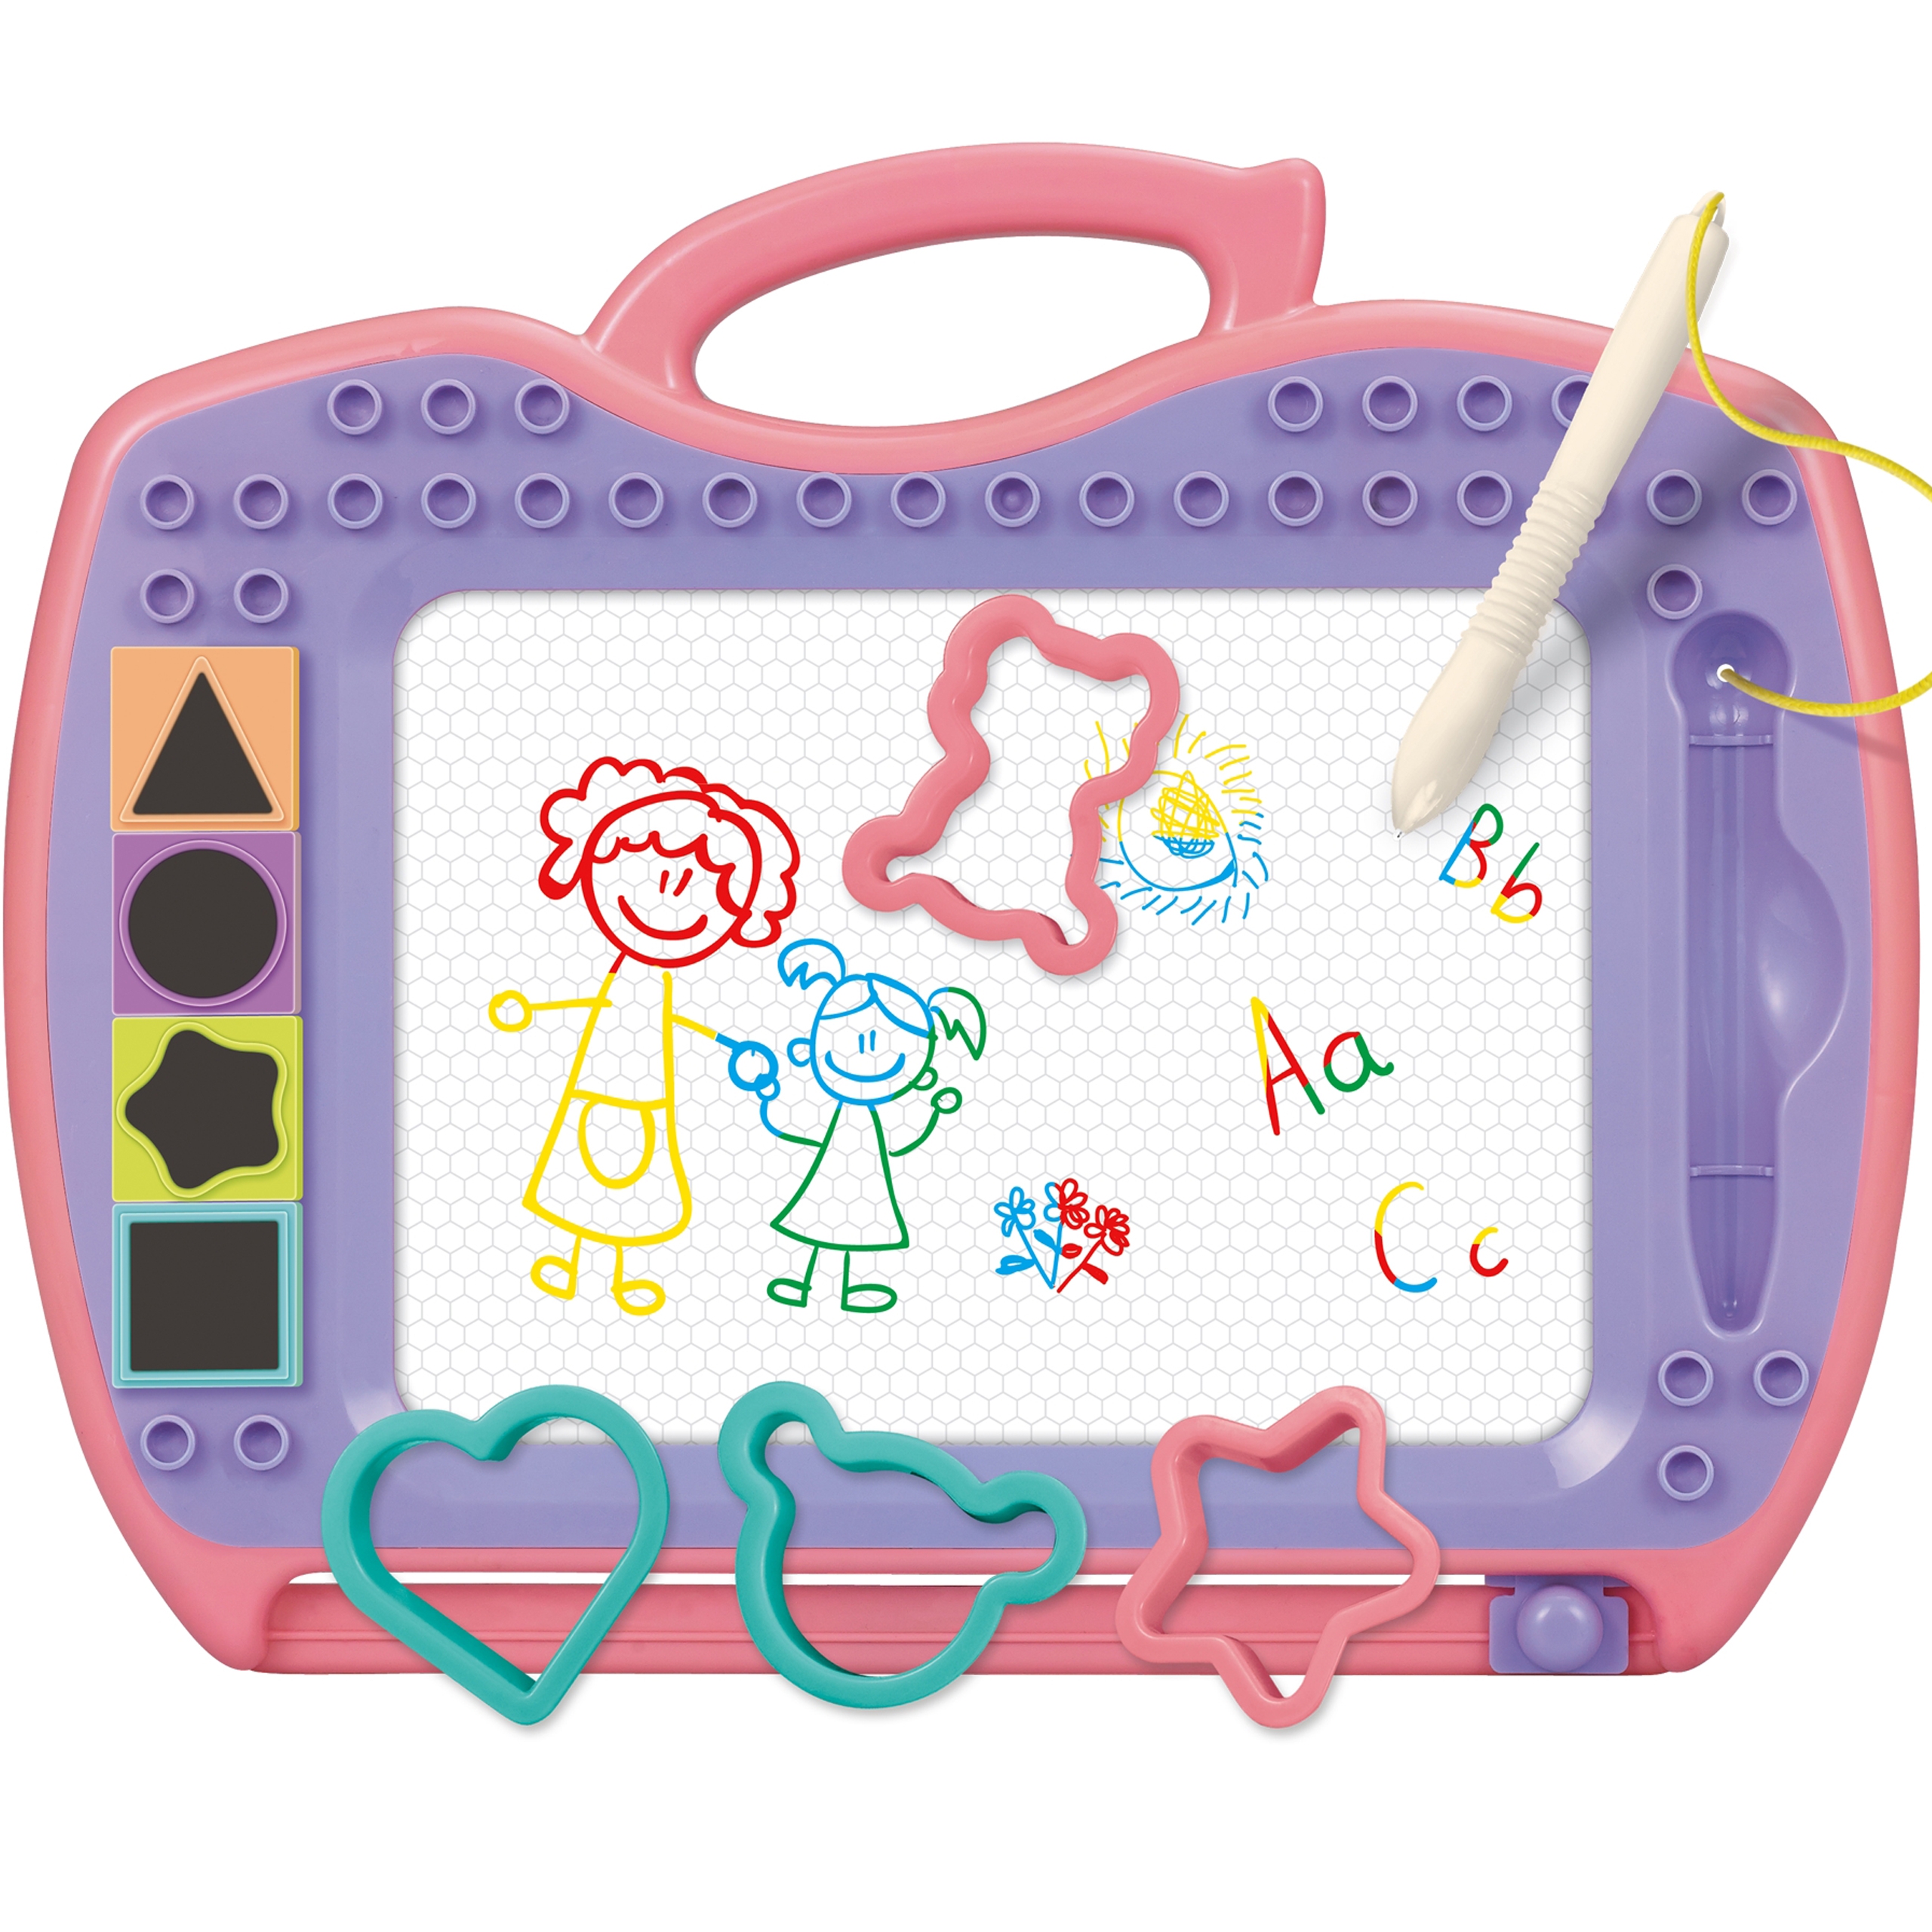 Znikopis tablica magnetyczna kolorowa + STEMpelki + wzory, zabawka dla dzieci, Woopie